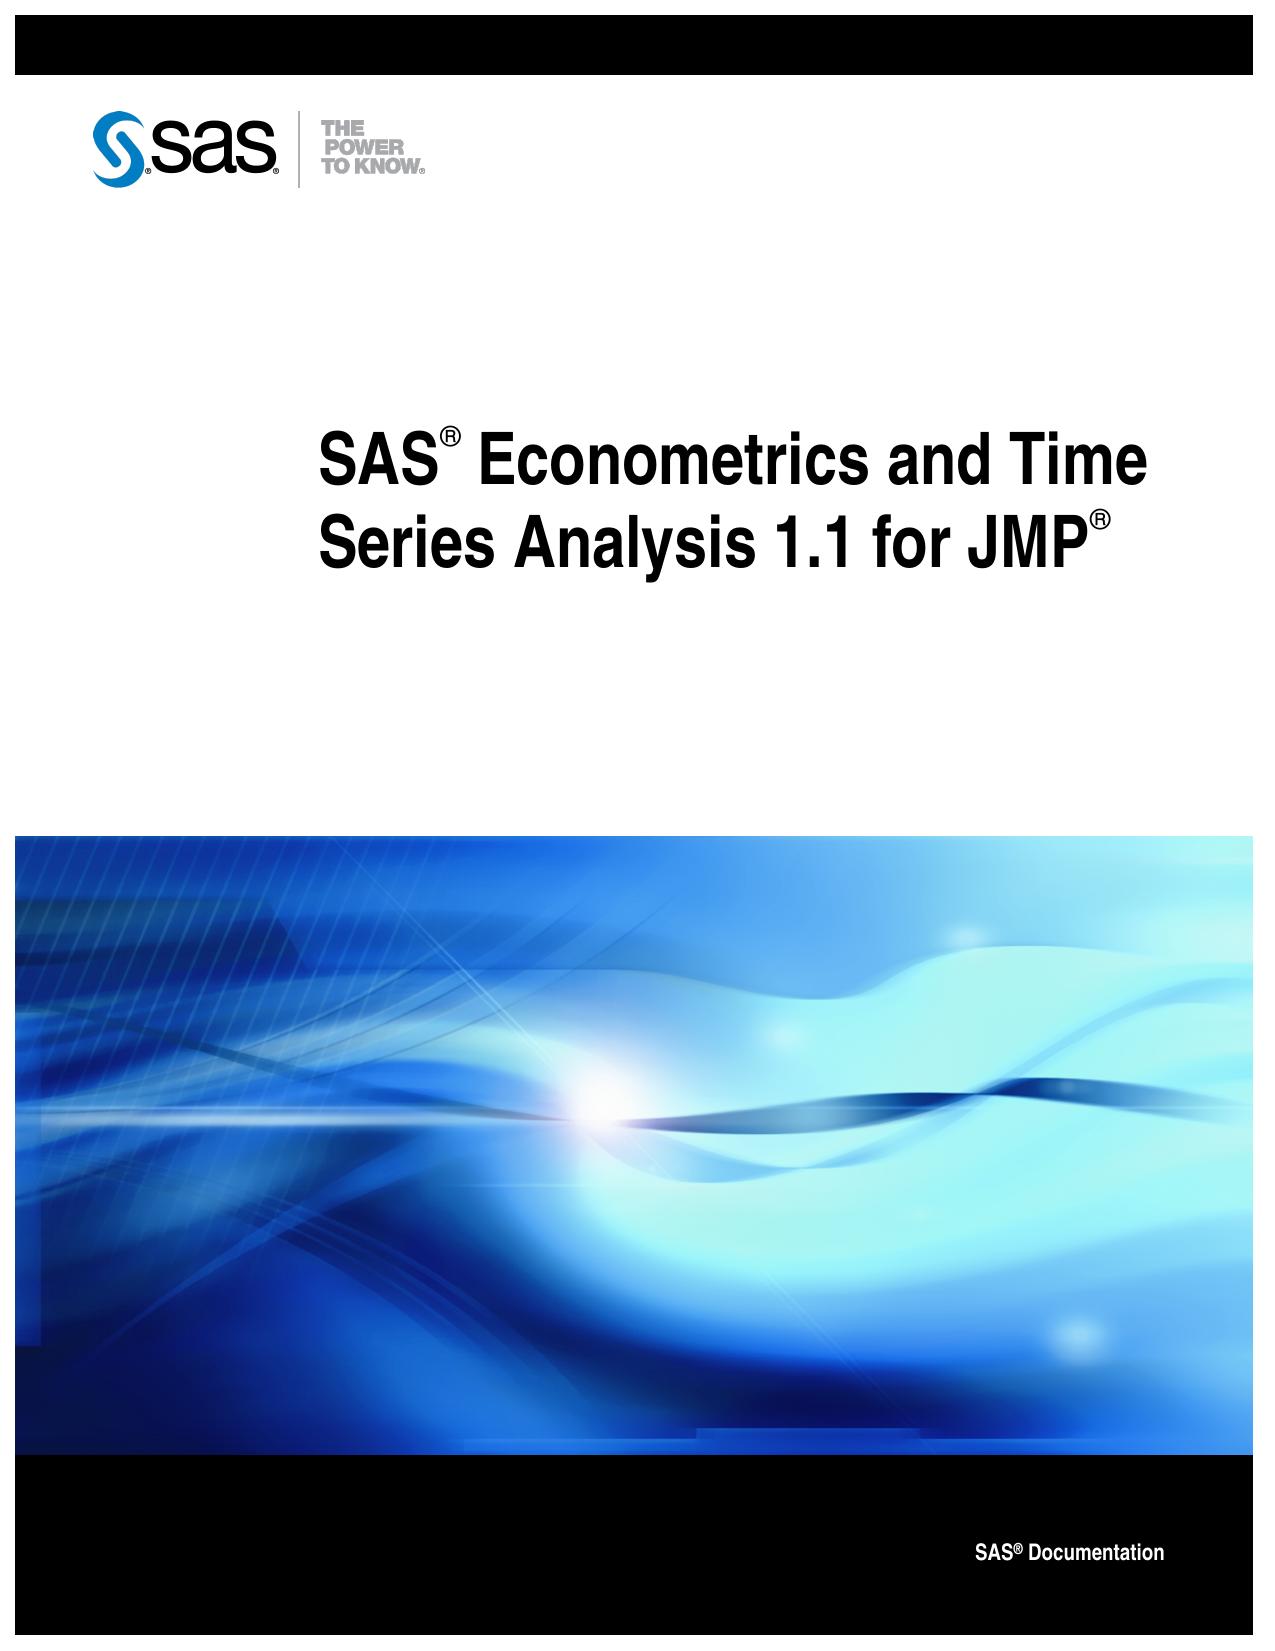 SAS Econometrics and Time Series Analysis 1.1 for JMP